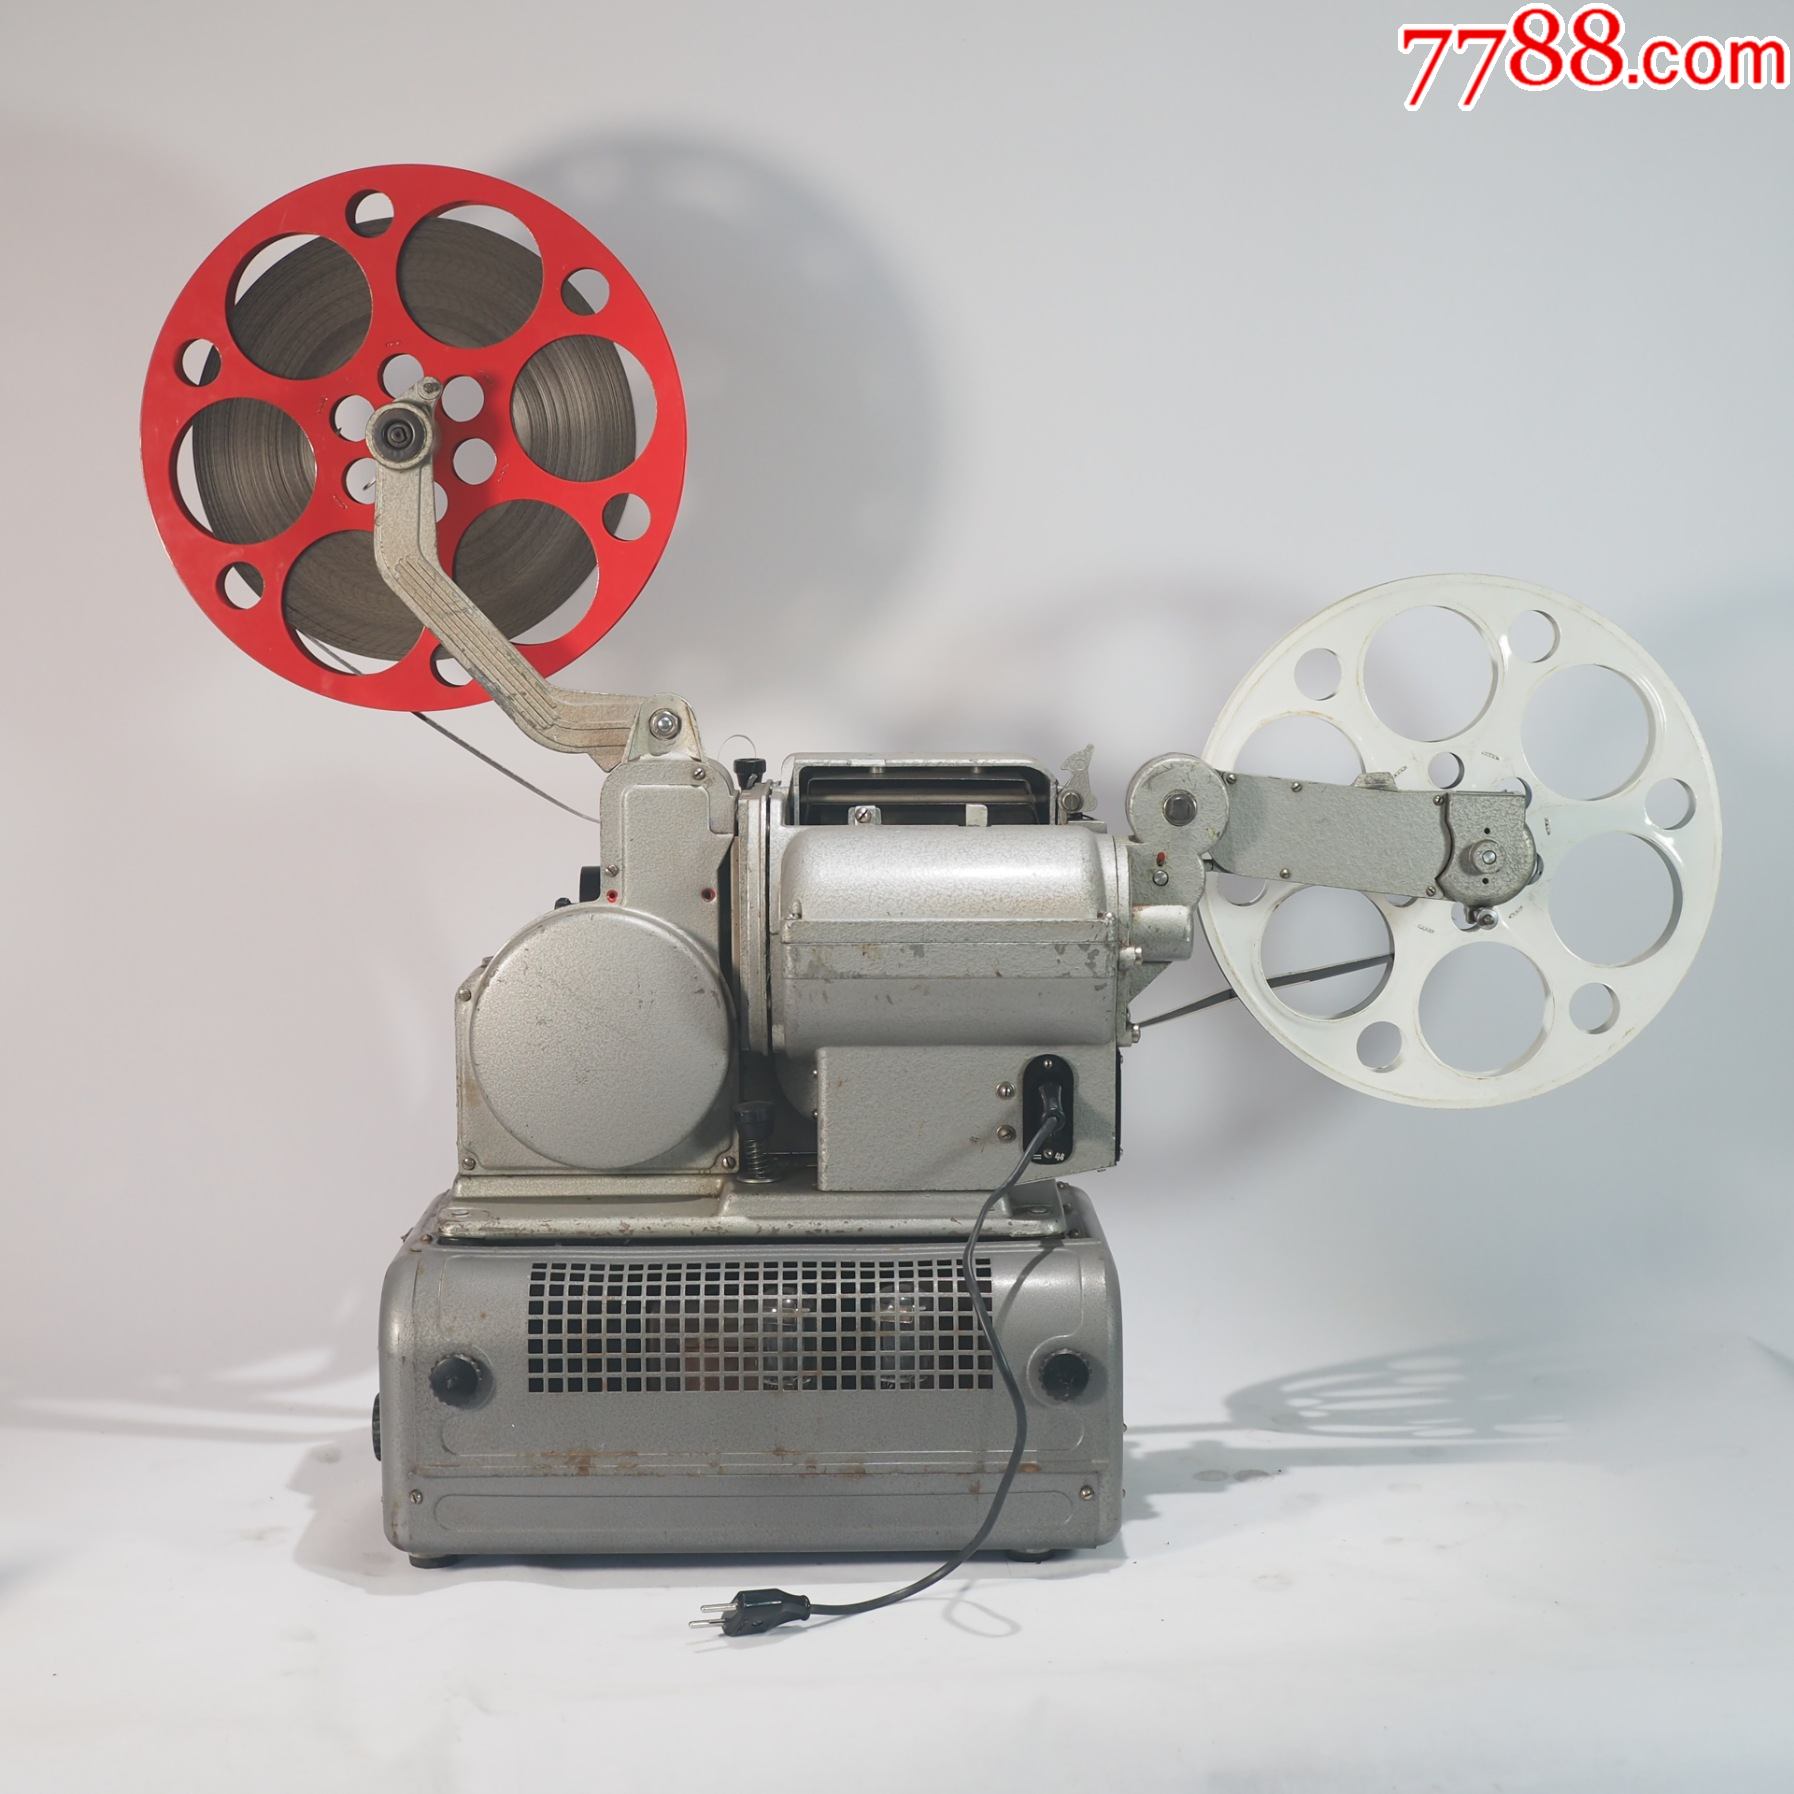 怀旧古董露天老电影乌克兰16毫米16mm老式胶片电影机放映机老五四